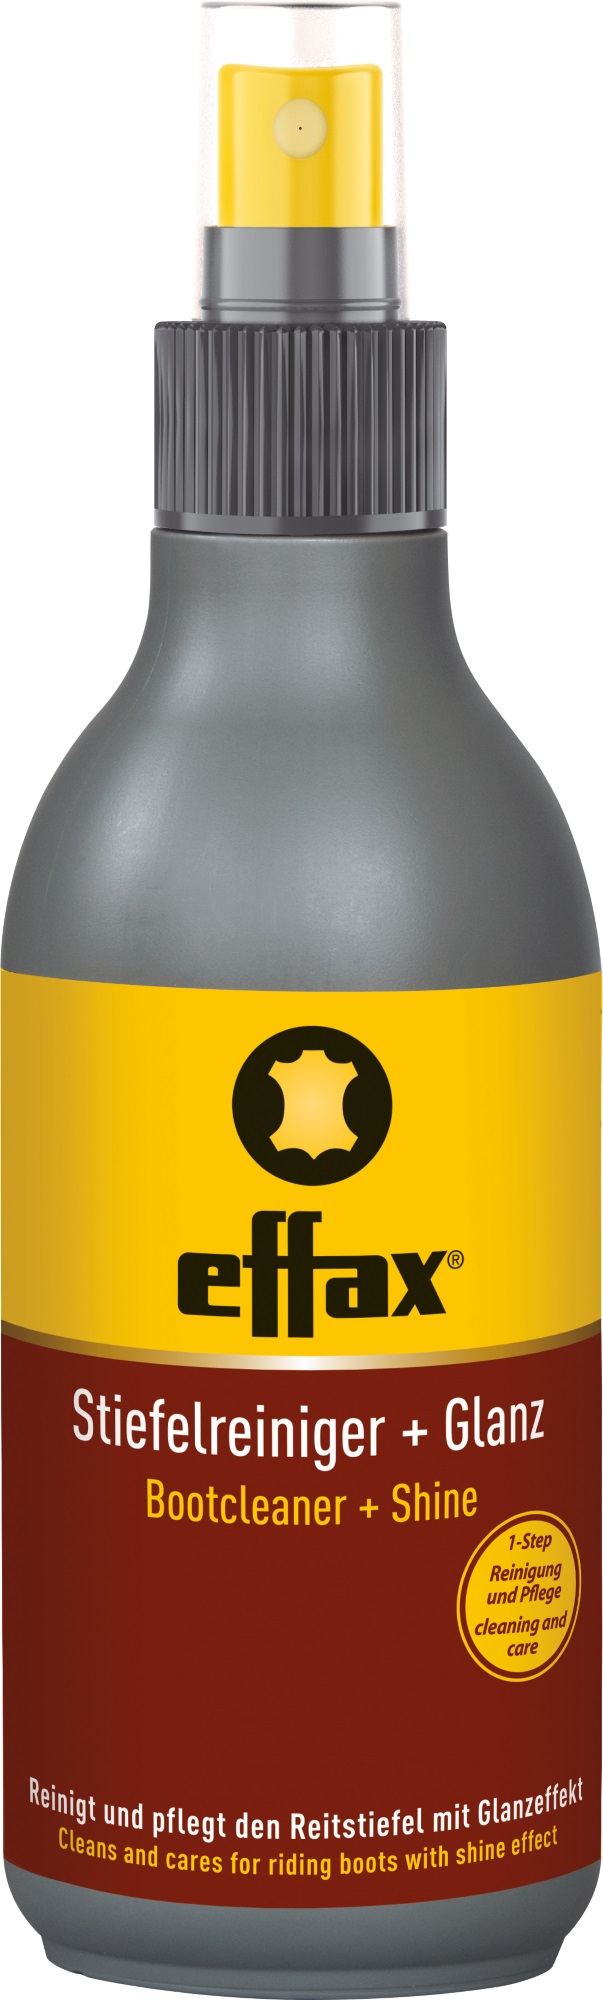 effax Lederpflege Reiniger + Glanz für Reitstiefel - uni  - 250ml